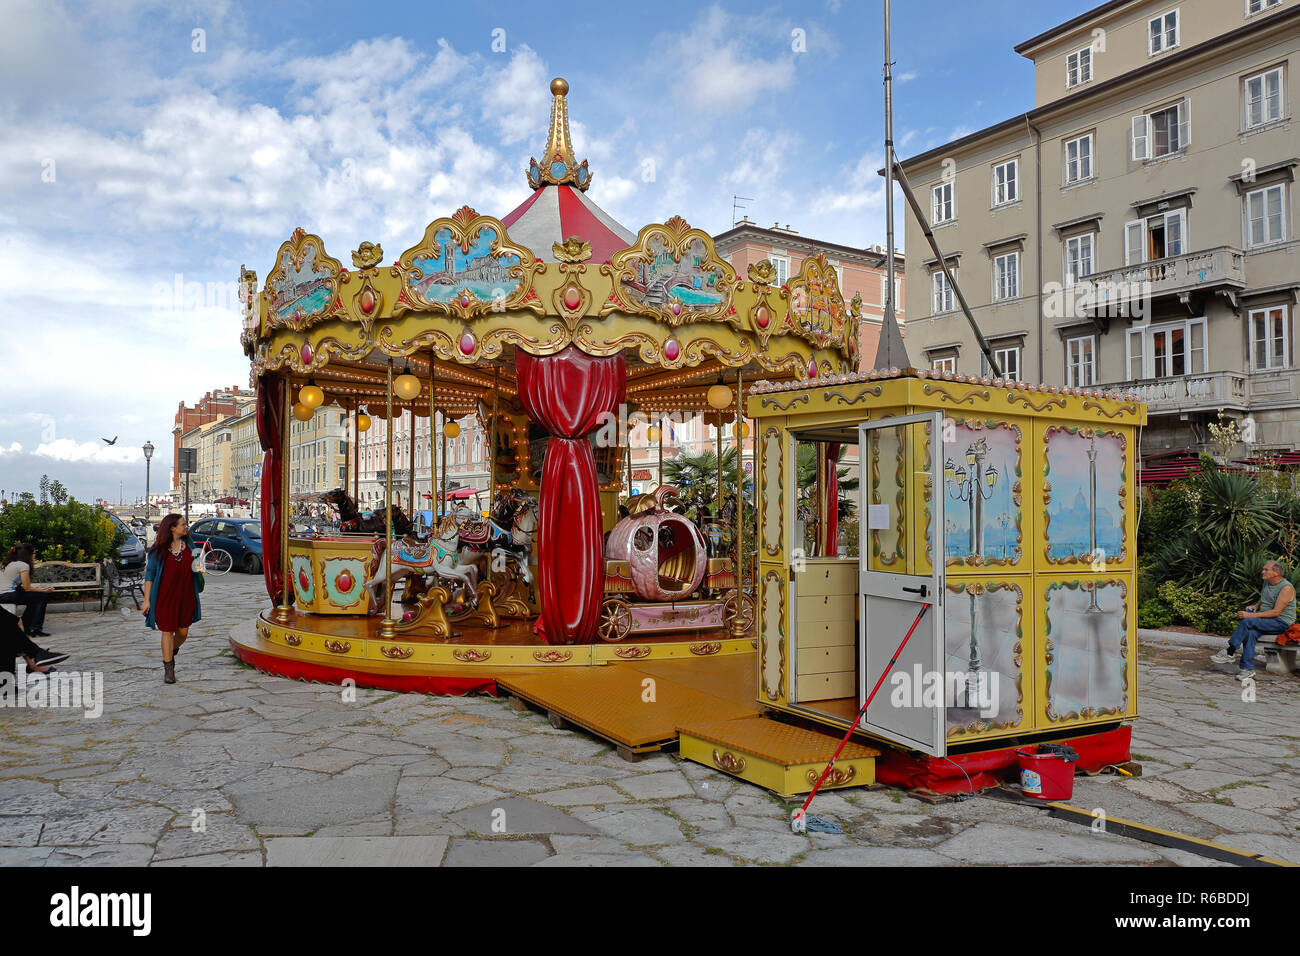 TRIESTE, ITALIA - 14 ottobre: Merry Go Round a Trieste il 14 ottobre 2014. Giostra tradizionale con tubi flessibili ride presso il park di Trieste, in Italia. Foto Stock